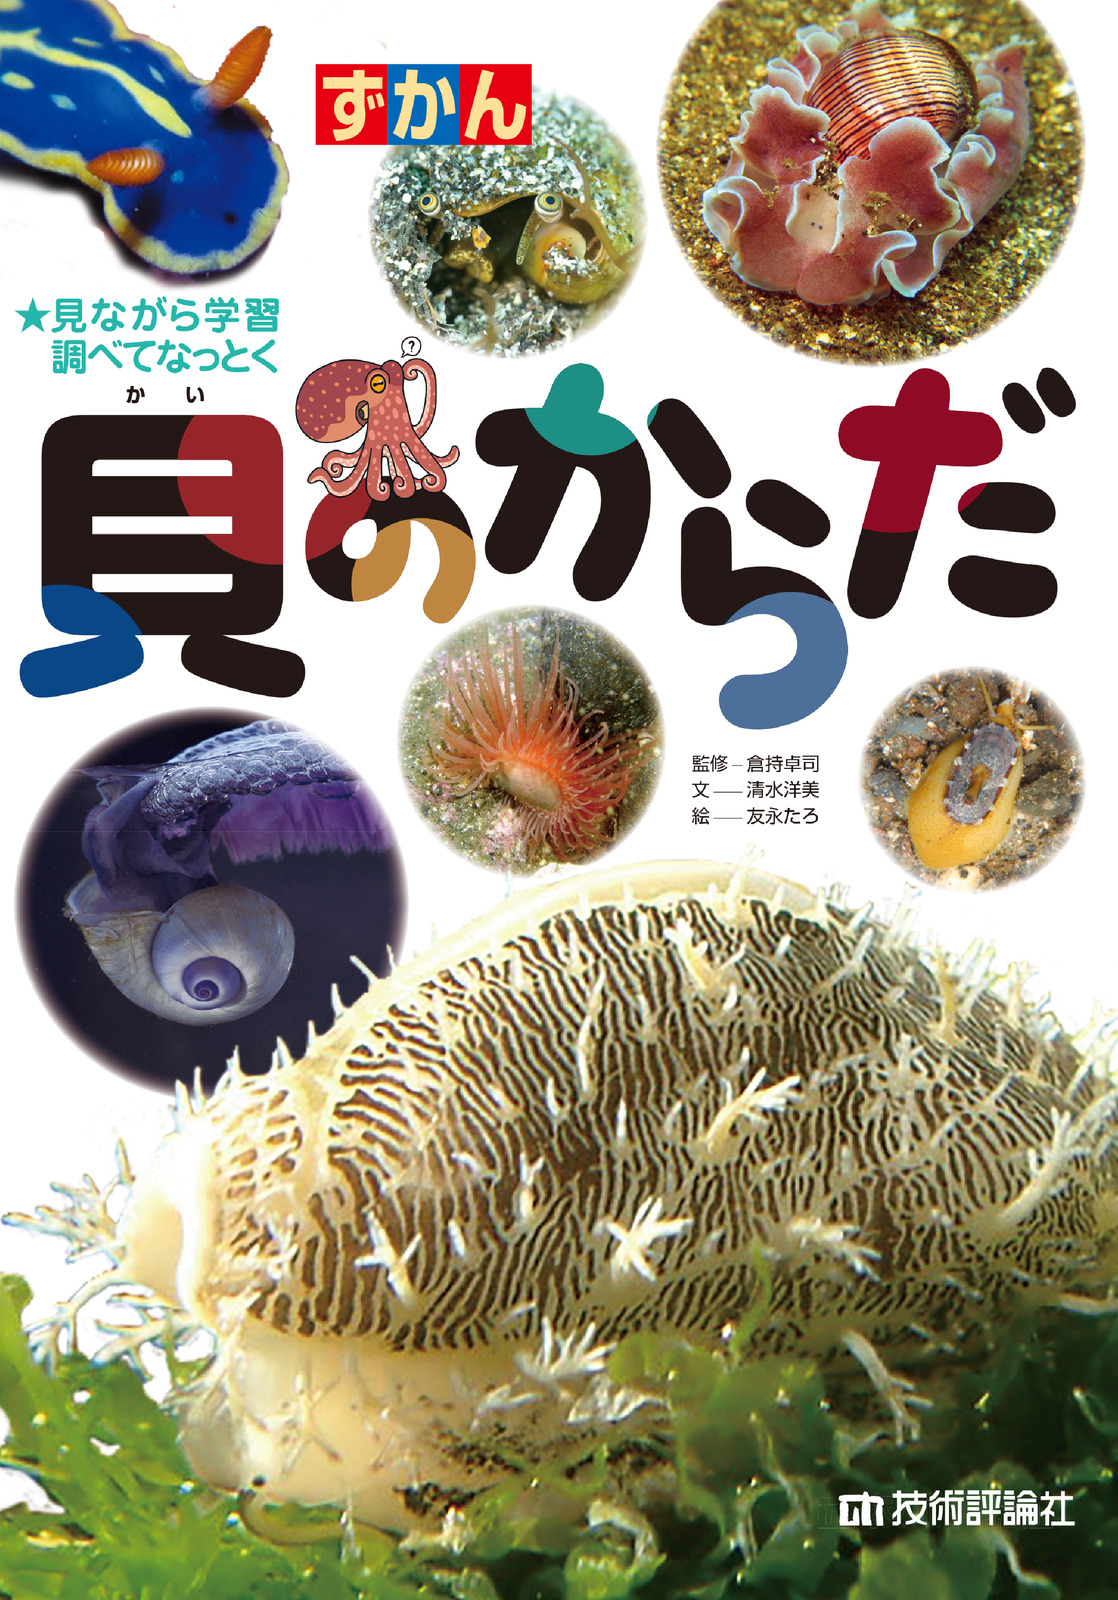 ホネガイ・サンゴ礁・シャコガイの殻